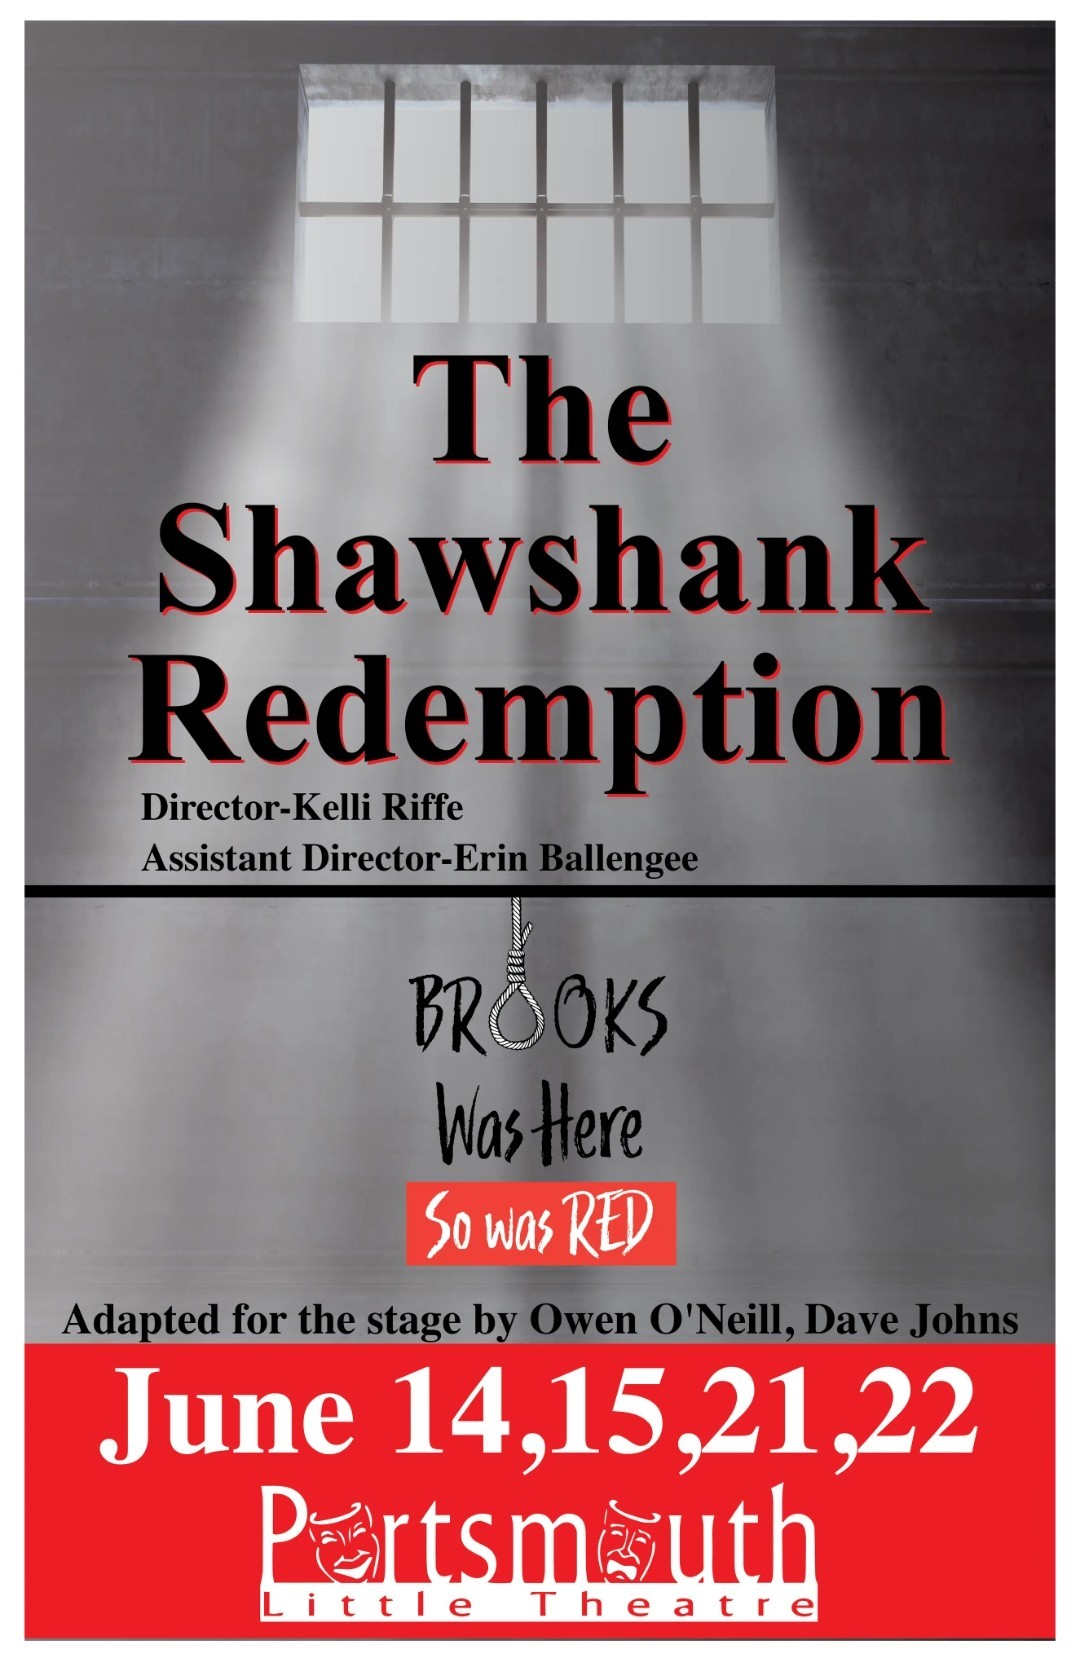 Shawshank Redemption  on juin 14, 19:30@Portsmouth Little Theatre - Choisissez un siège,Achetez des billets et obtenez des informations surPortsmouth Little Theatre 